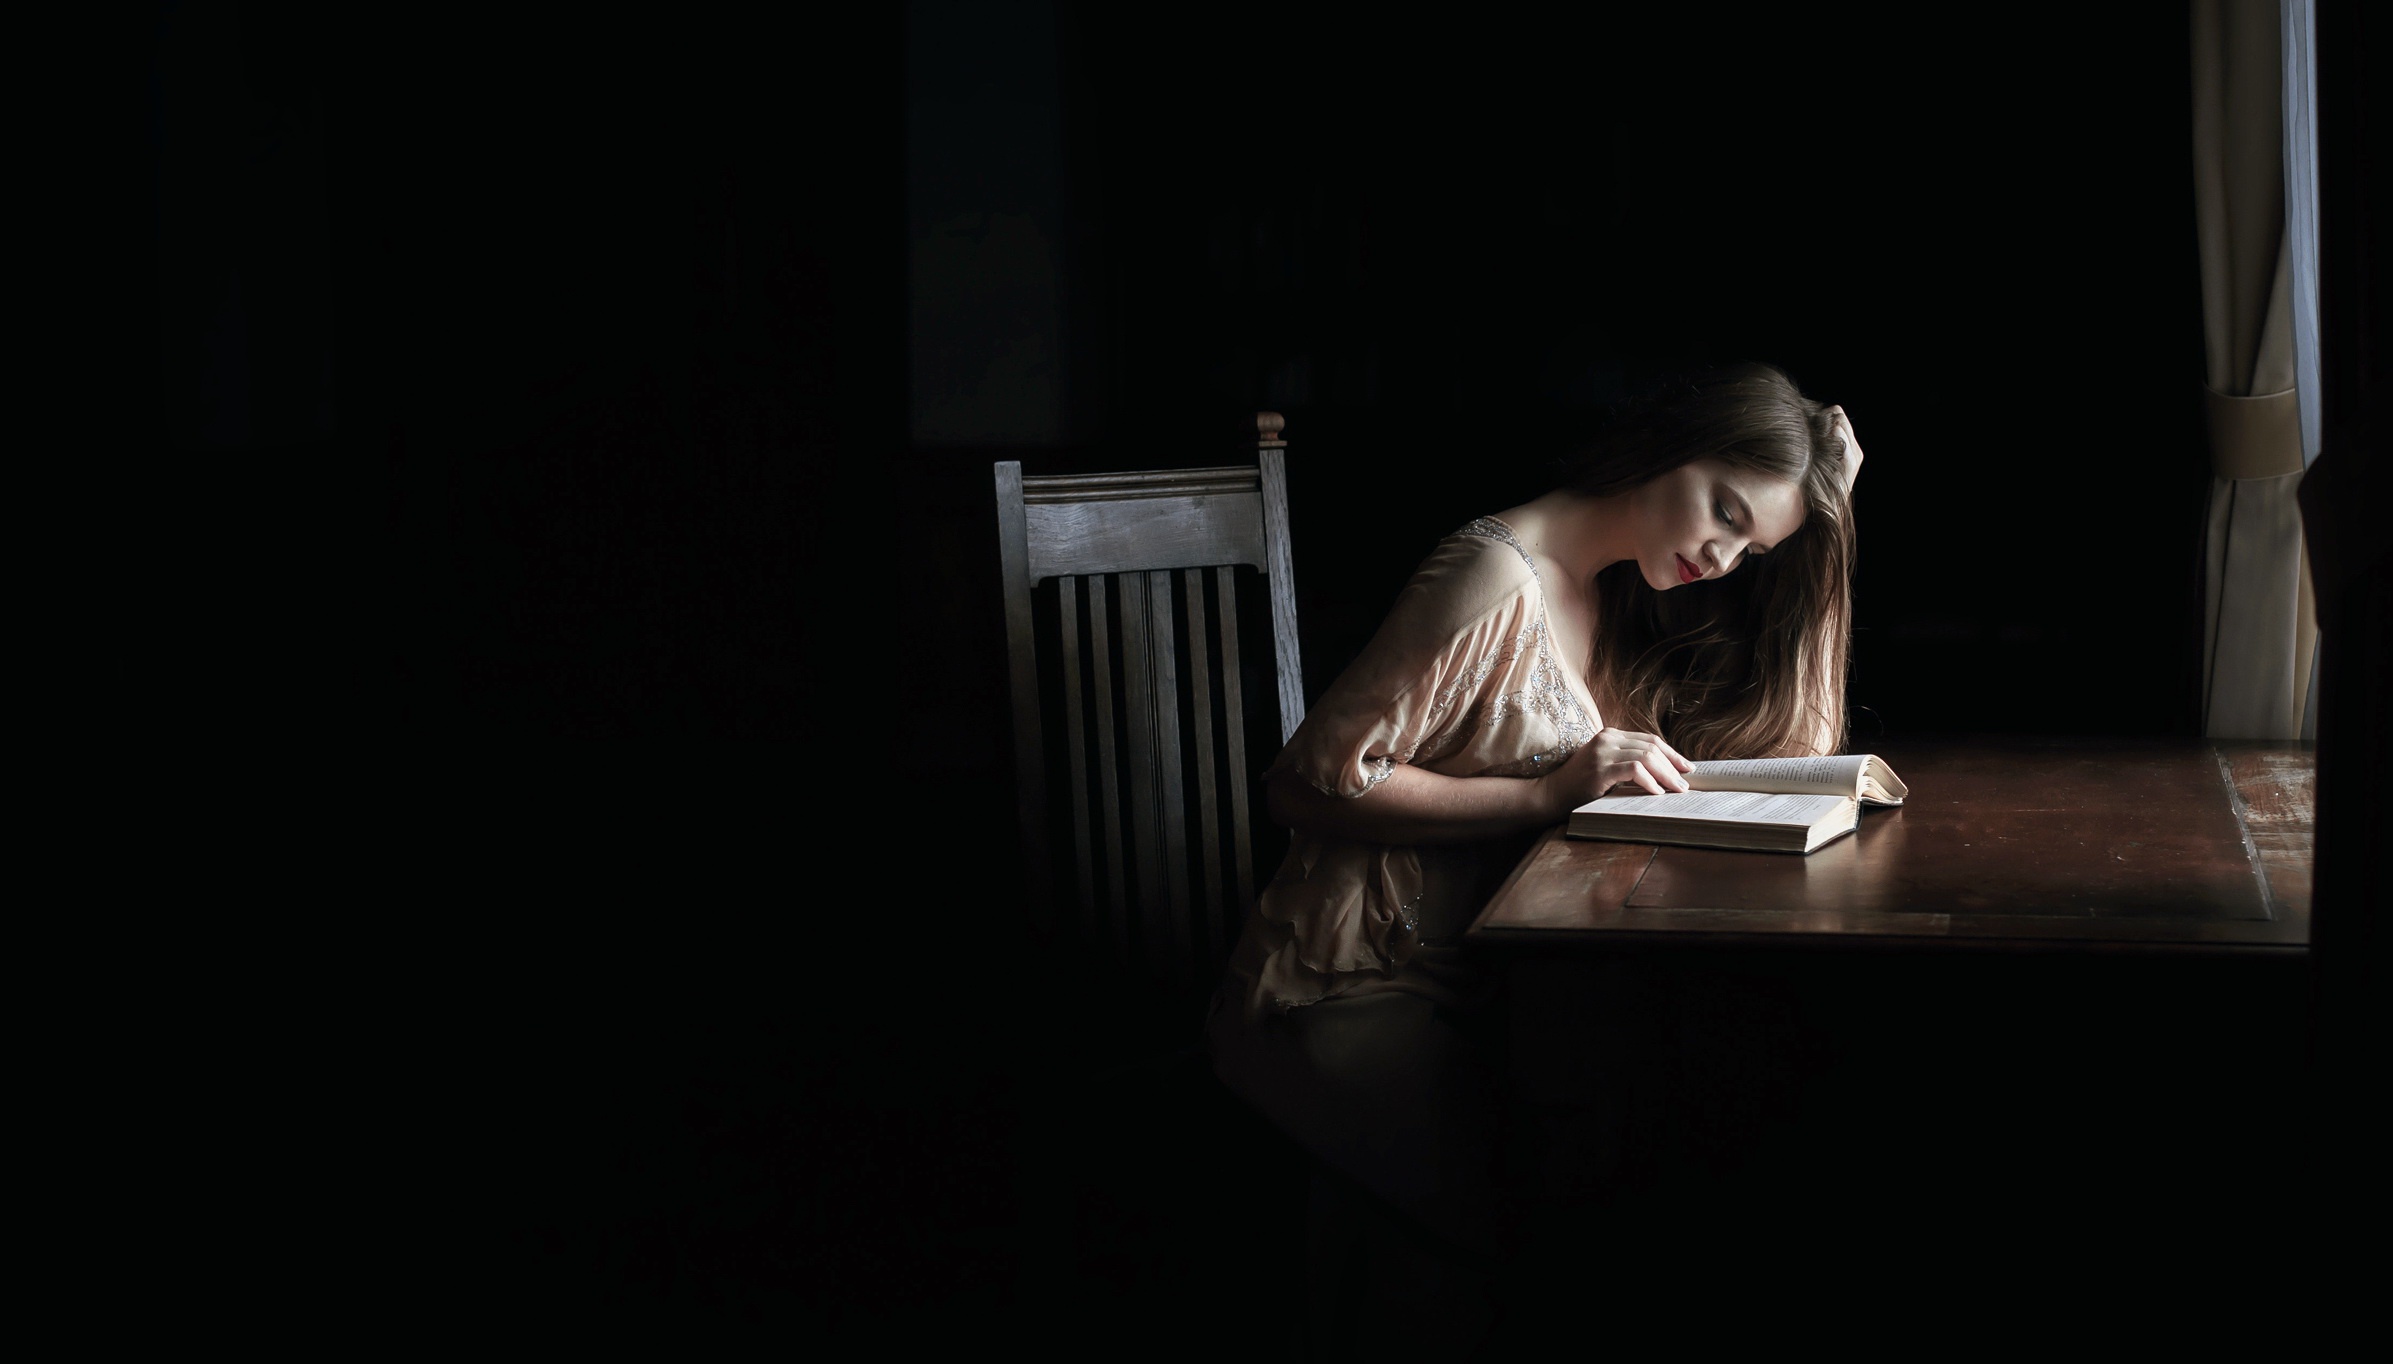 Сидящая женщина с книгой. Девушка с книгой. Девушка в темной комнате. Девушка сидит в темноте. Девушка в полумраке.